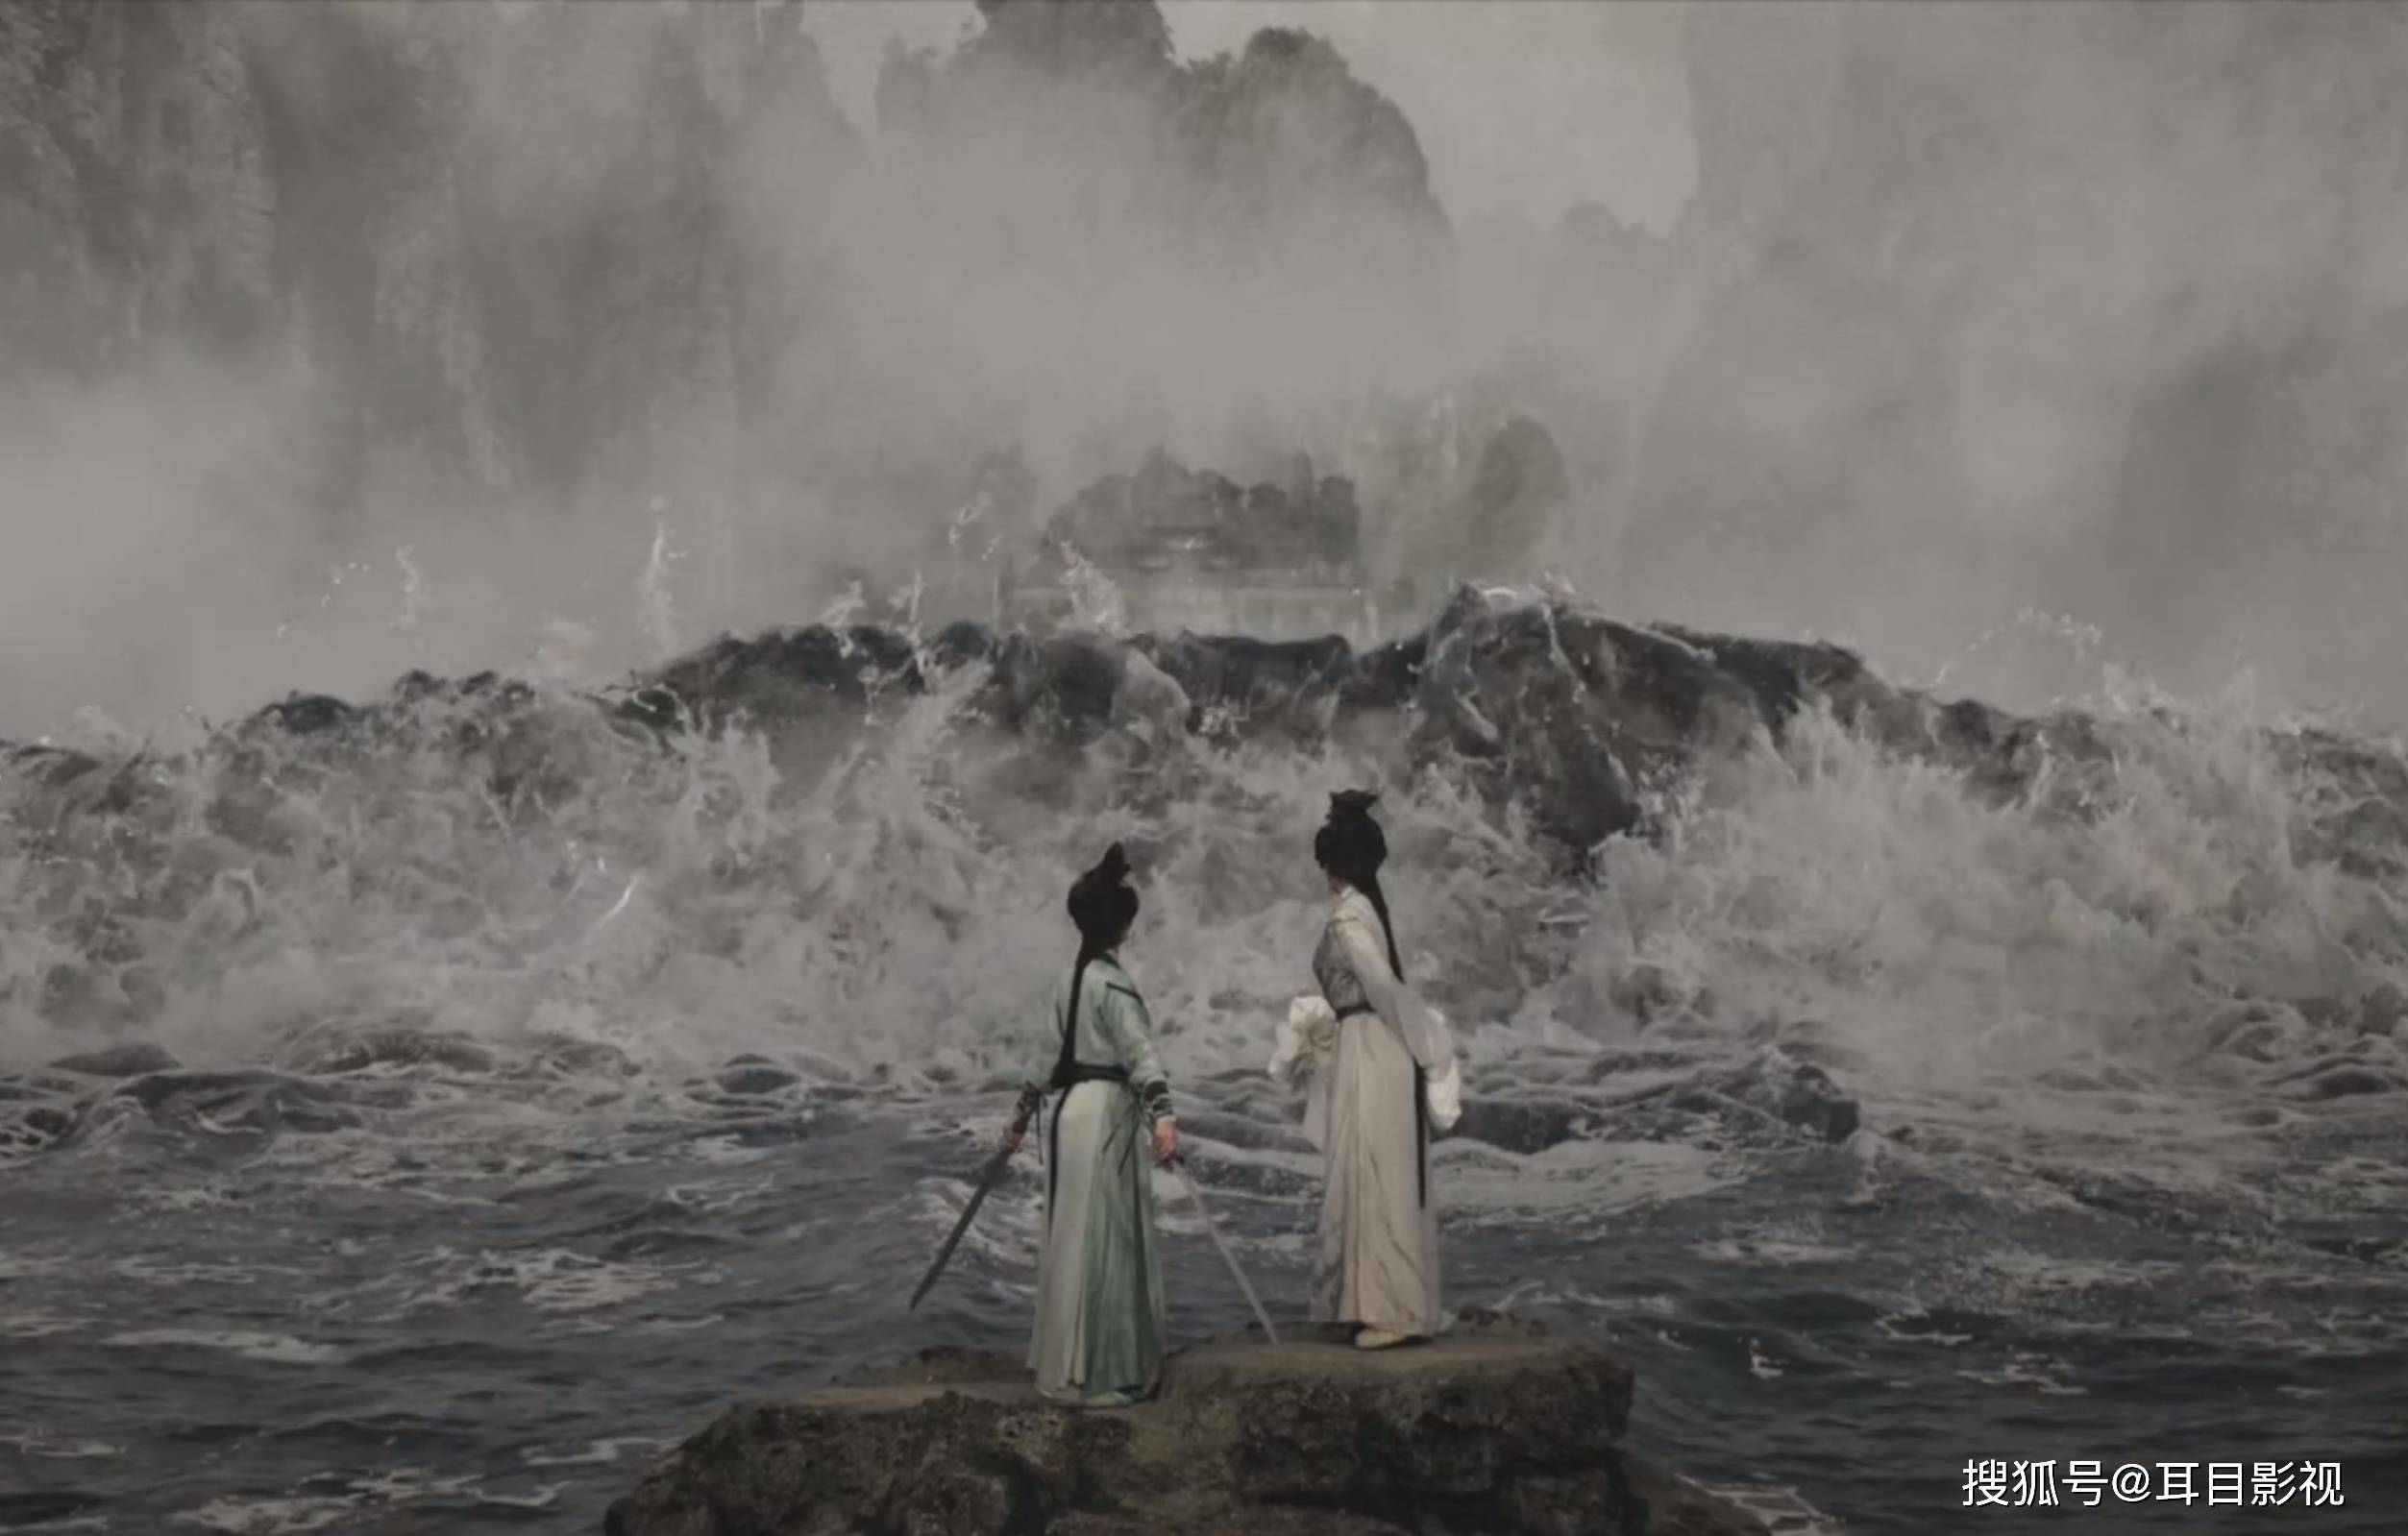 粤剧4k电影《白蛇传·情》,一部极致东方美学意味的戏曲大片